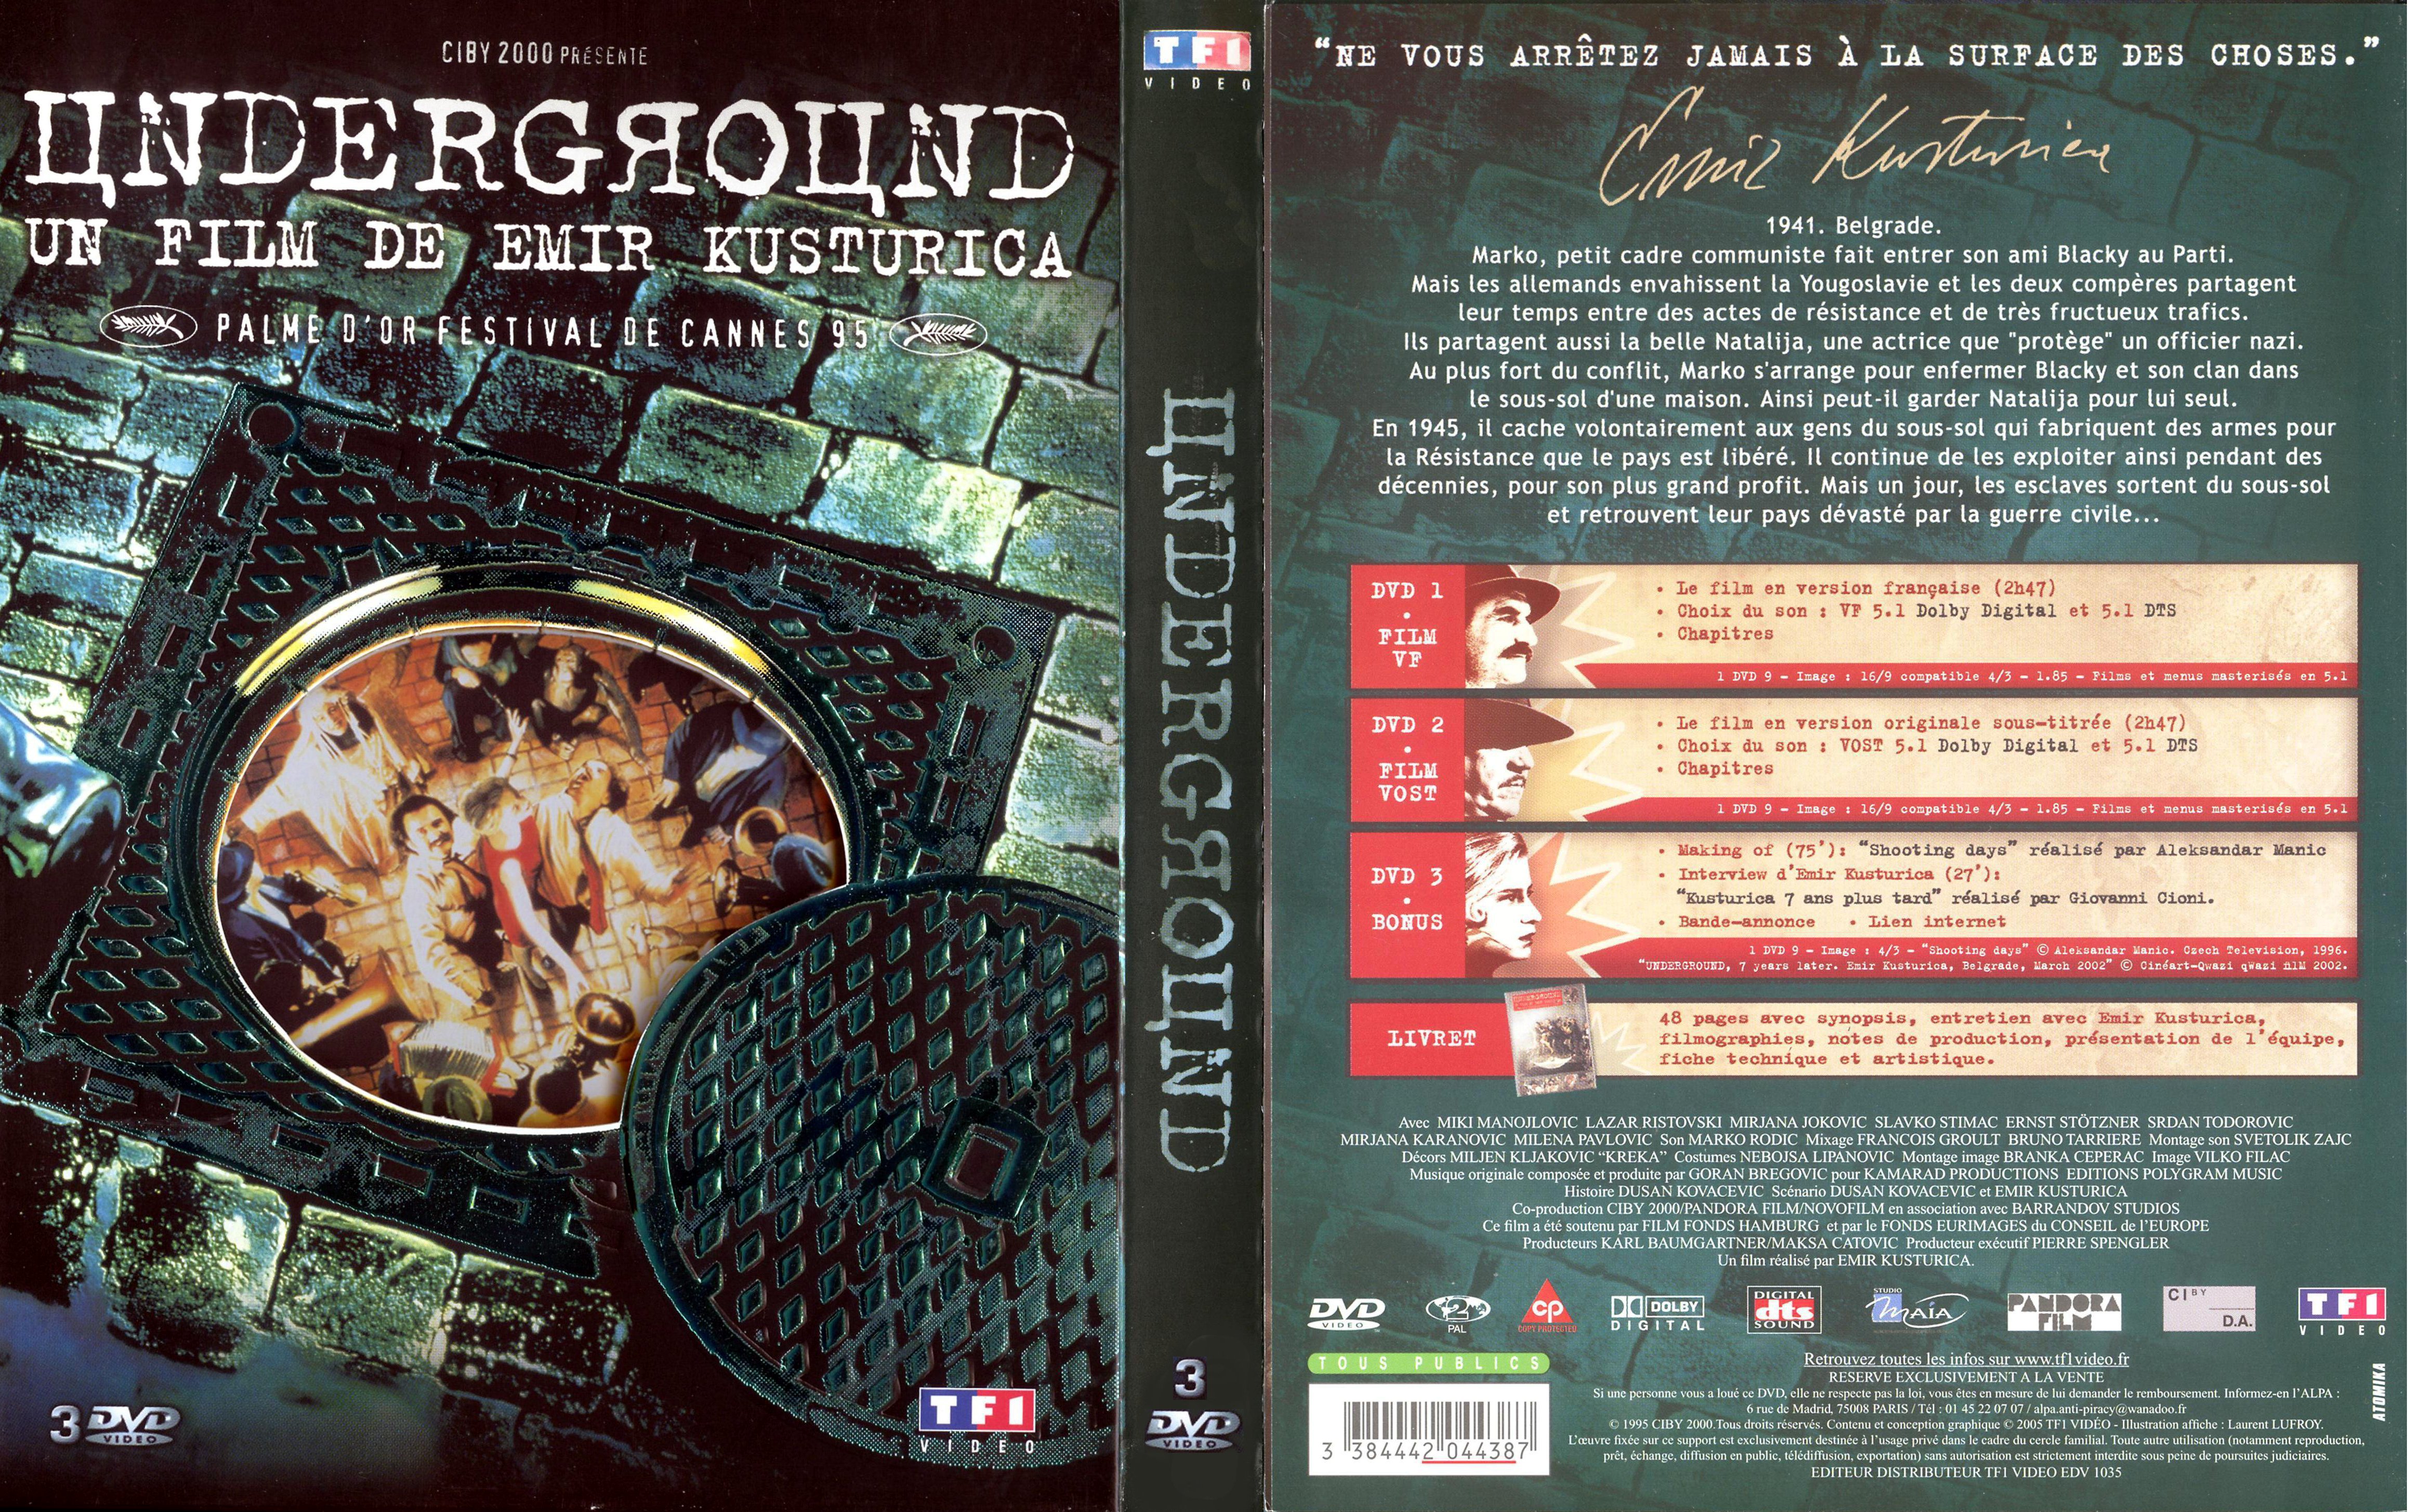 Jaquette DVD Underground v3